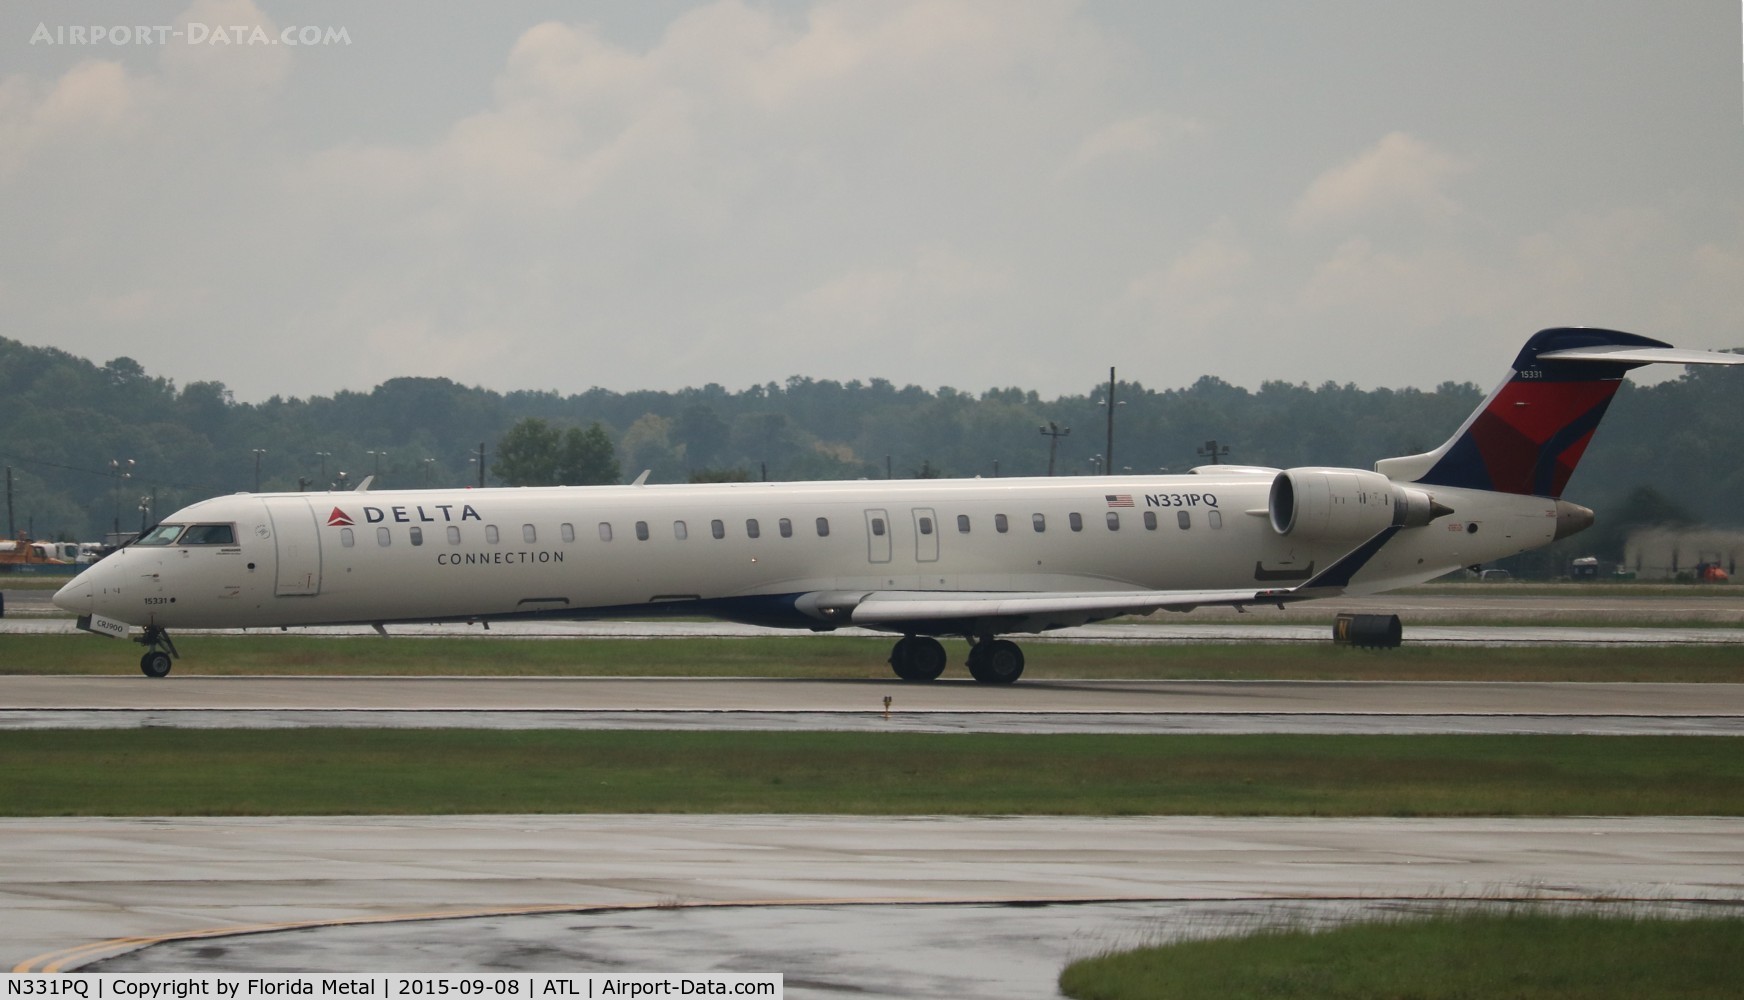 N331PQ, 2014 Bombardier CRJ-900LR (CL-600-2D24) C/N 15331, Delta Connection